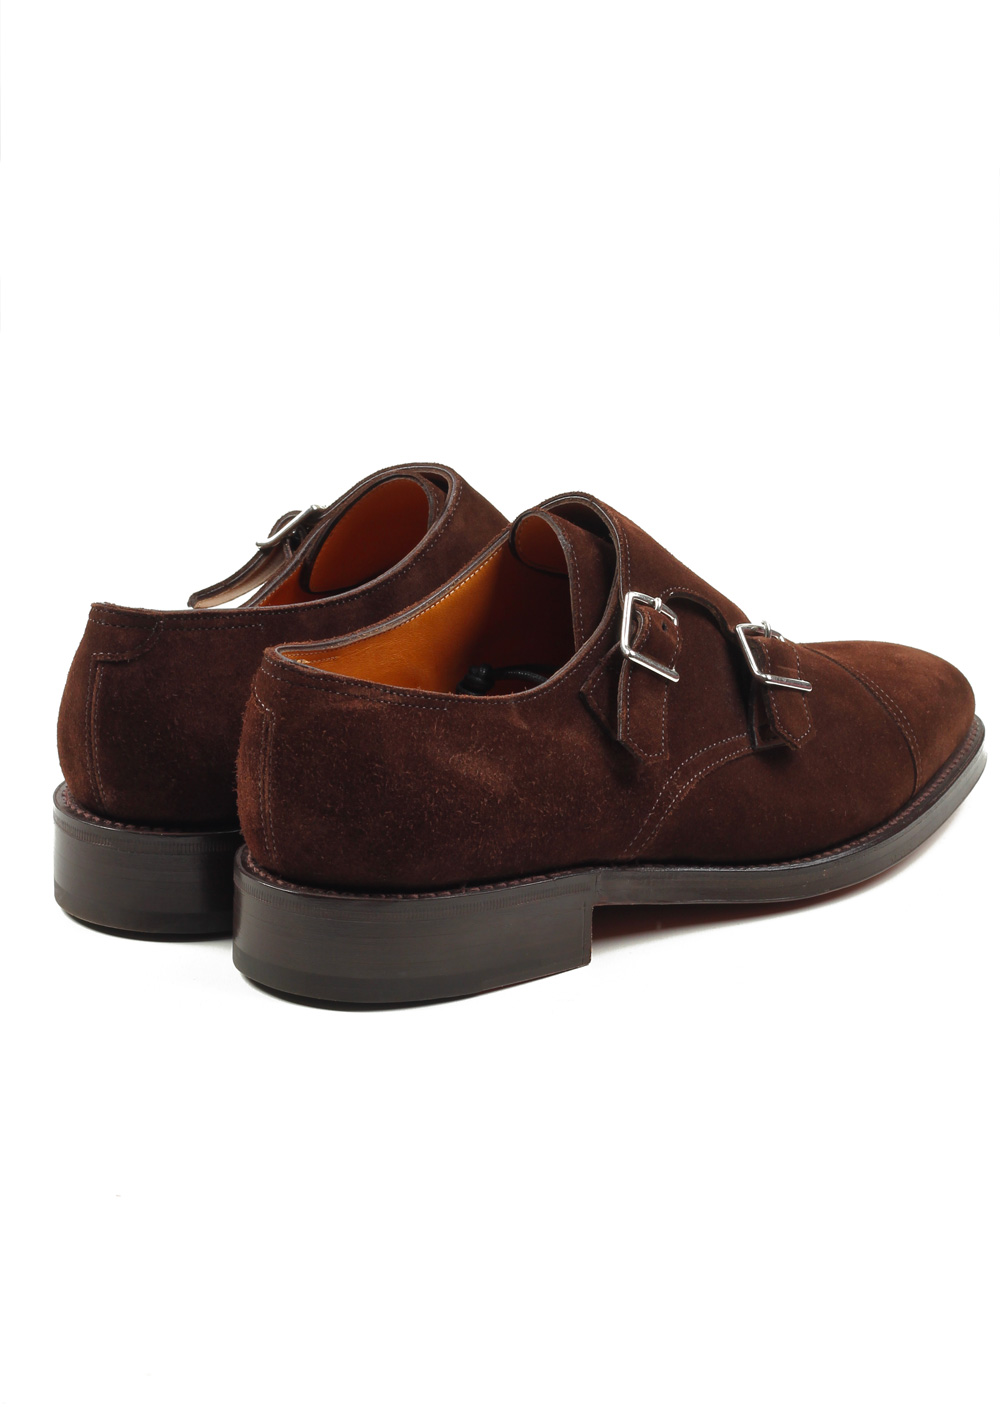 John Lobb William Brown Double Monk Strap Shoes Size 7 UK / 8 U.S. On 9795 Last | Costume Limité